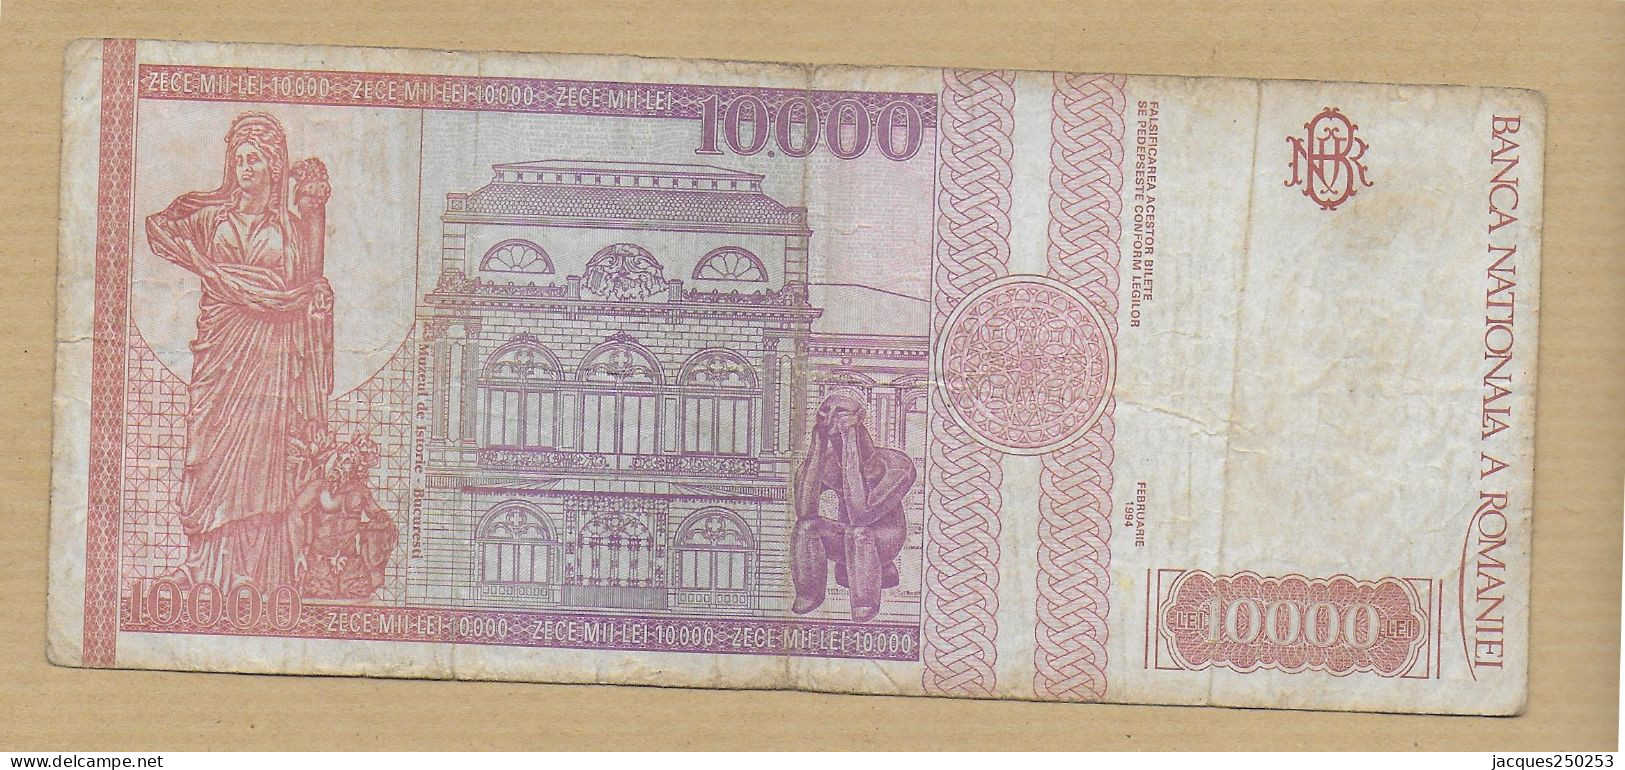 10000 LEI 1994 - Rumania